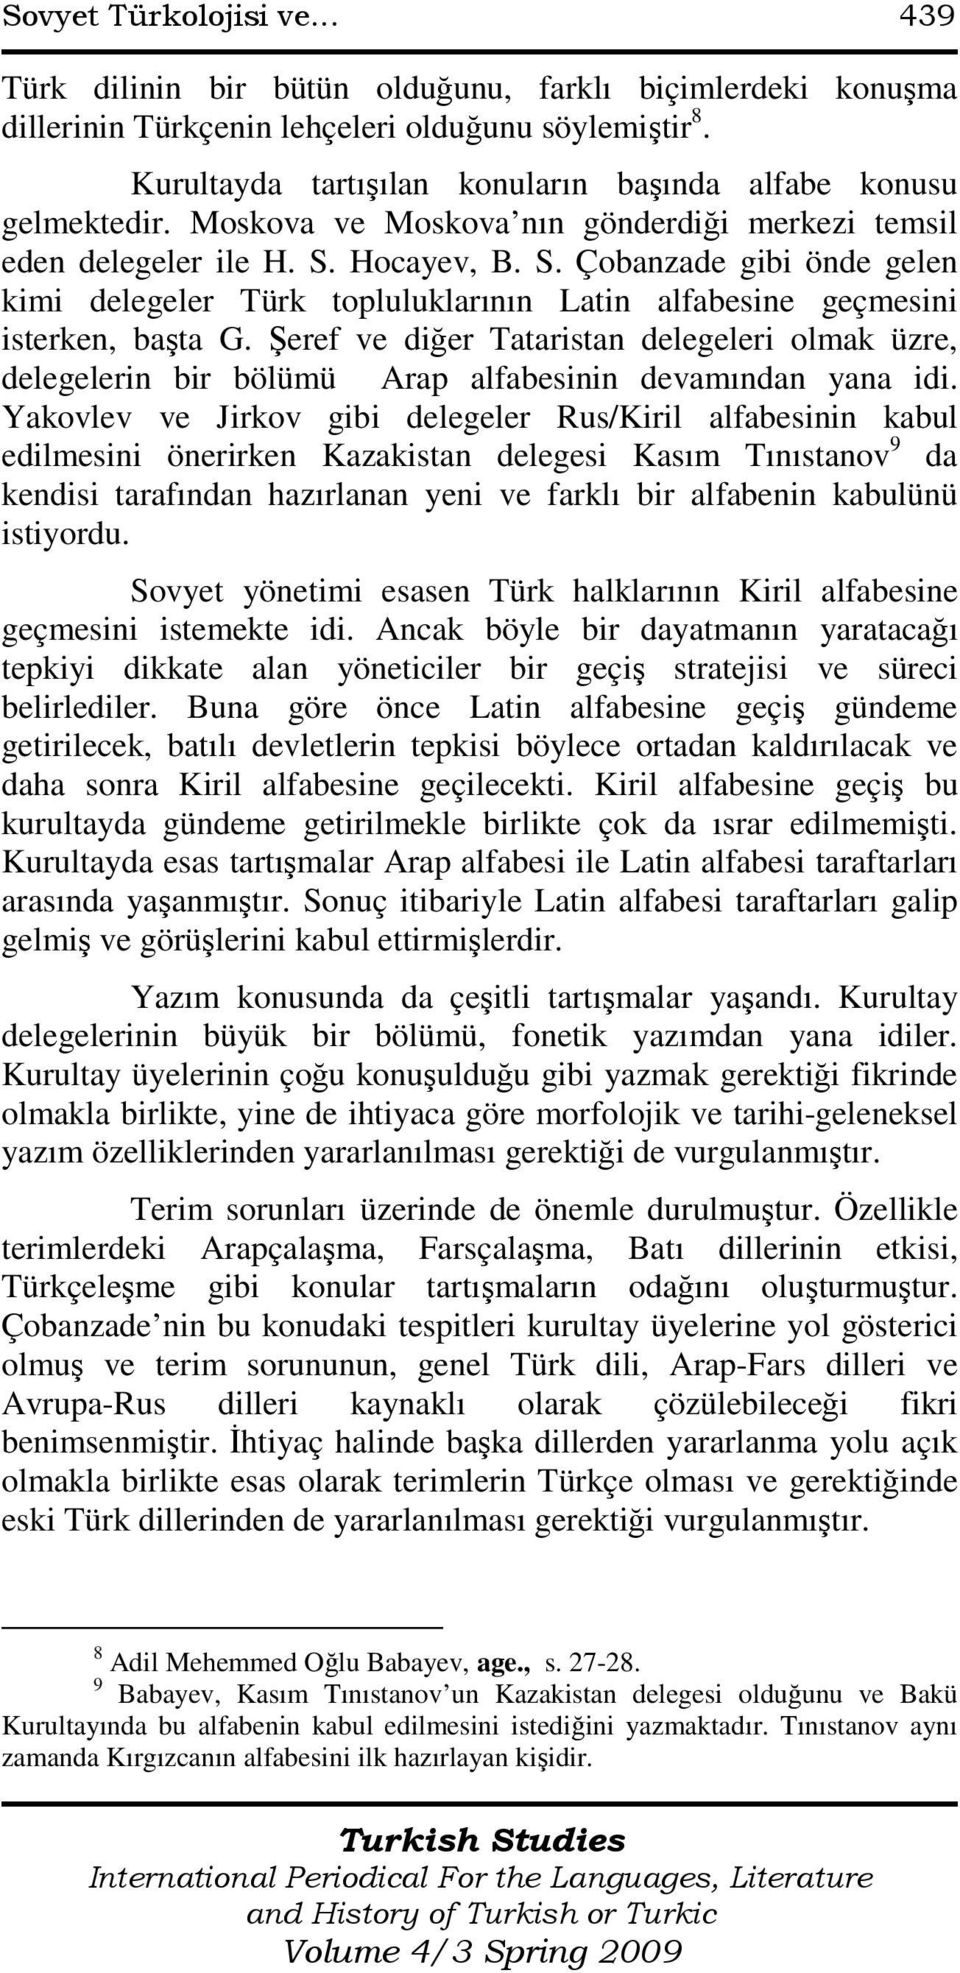 Hocayev, B. S. Çobanzade gibi önde gelen kimi delegeler Türk topluluklarının Latin alfabesine geçmesini isterken, başta G.